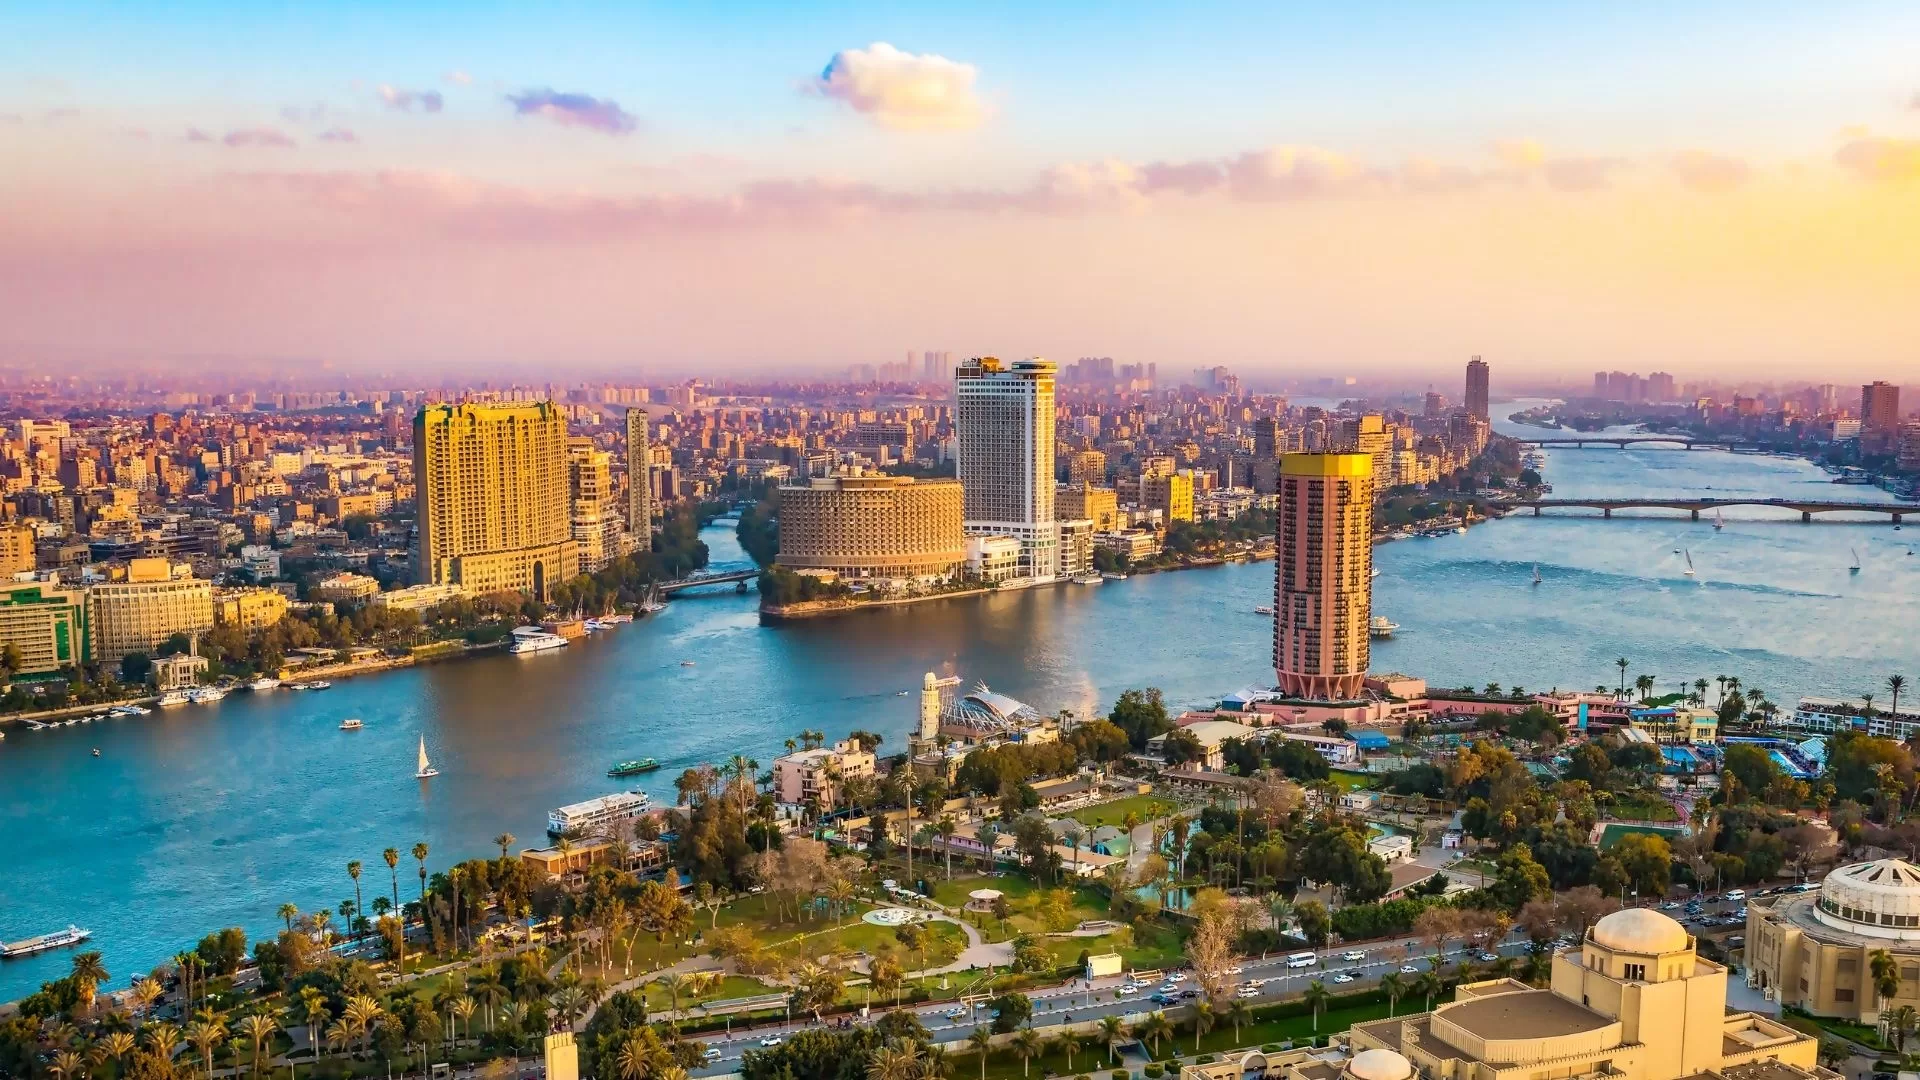 Cairo crociera sul Nilo storia